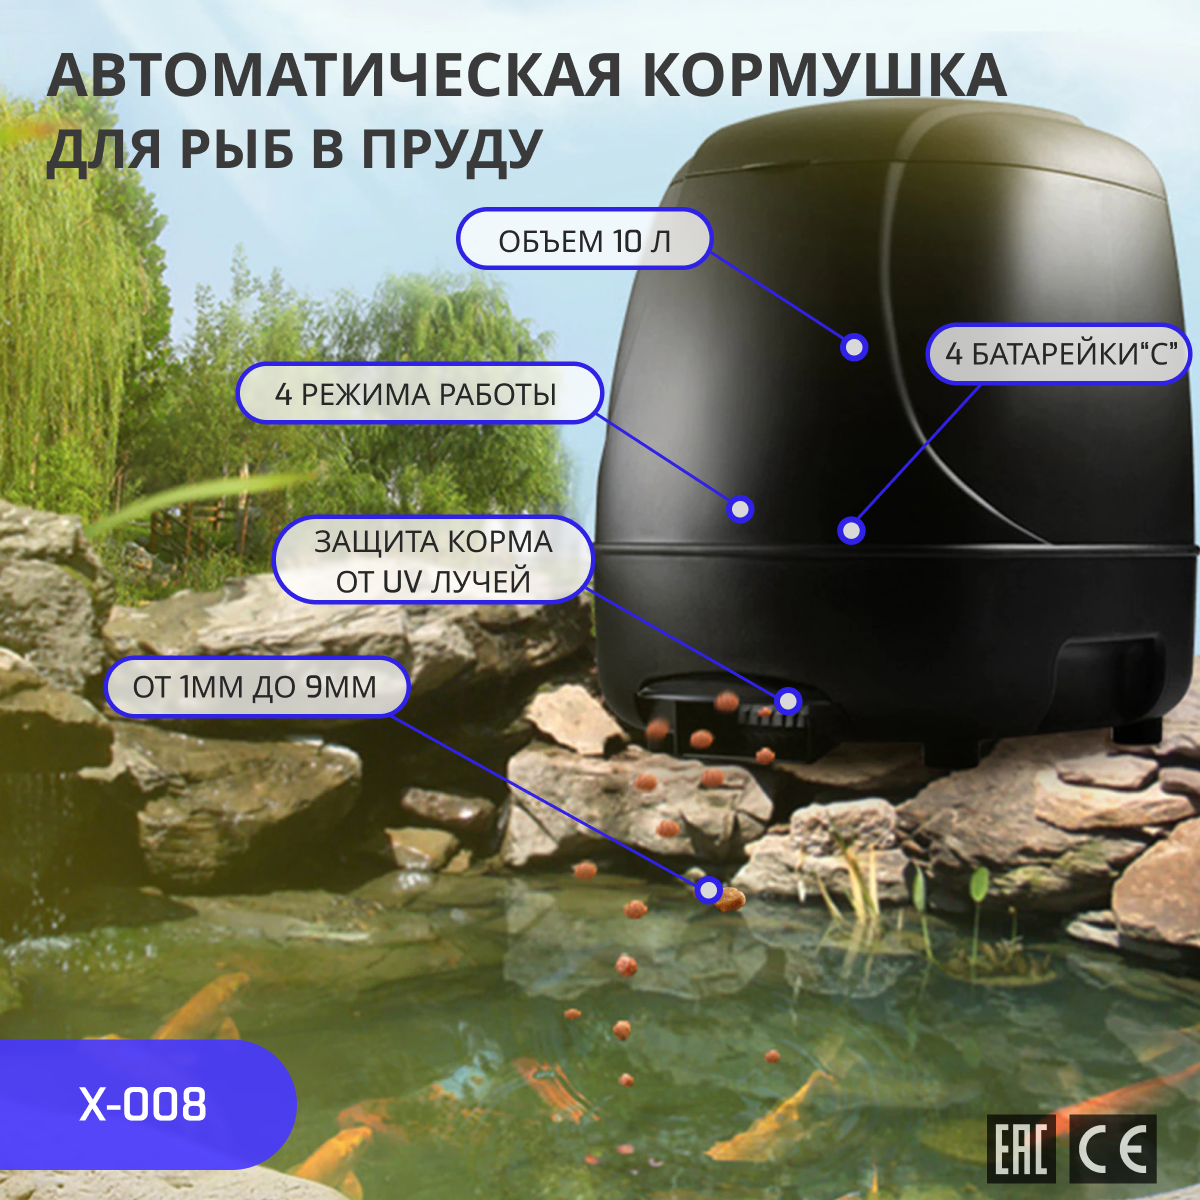 X Aquatic X-008 Автоматическая кормушка для рыб в пруду, 10л